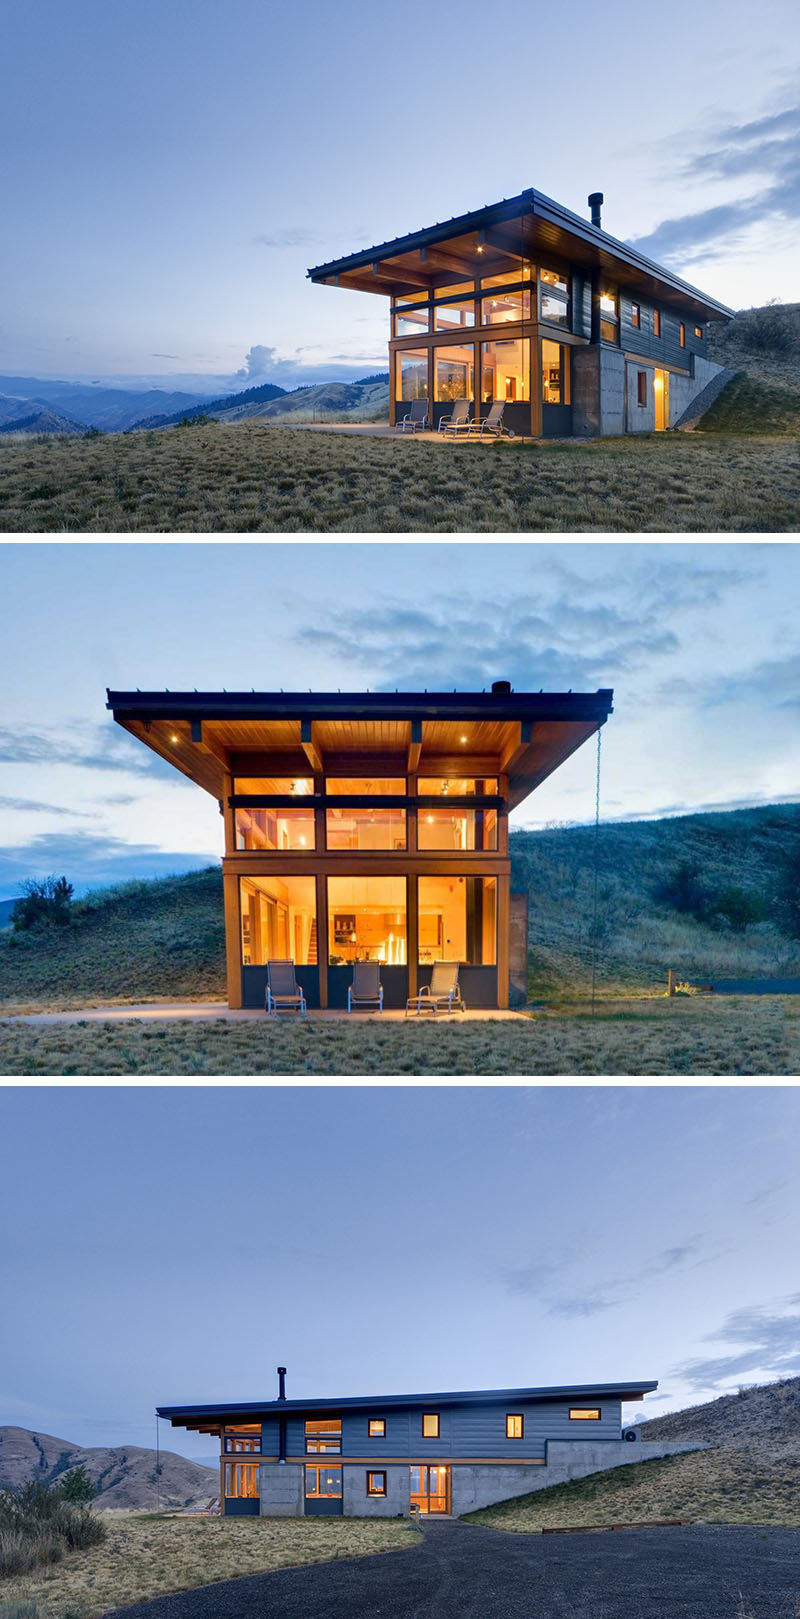 20 удивительных примеров архитектуры северо-запада Тихого океана // Построенный на склоне холма, этот дом имеет открытые балки, которые проходят по всей длине дома.